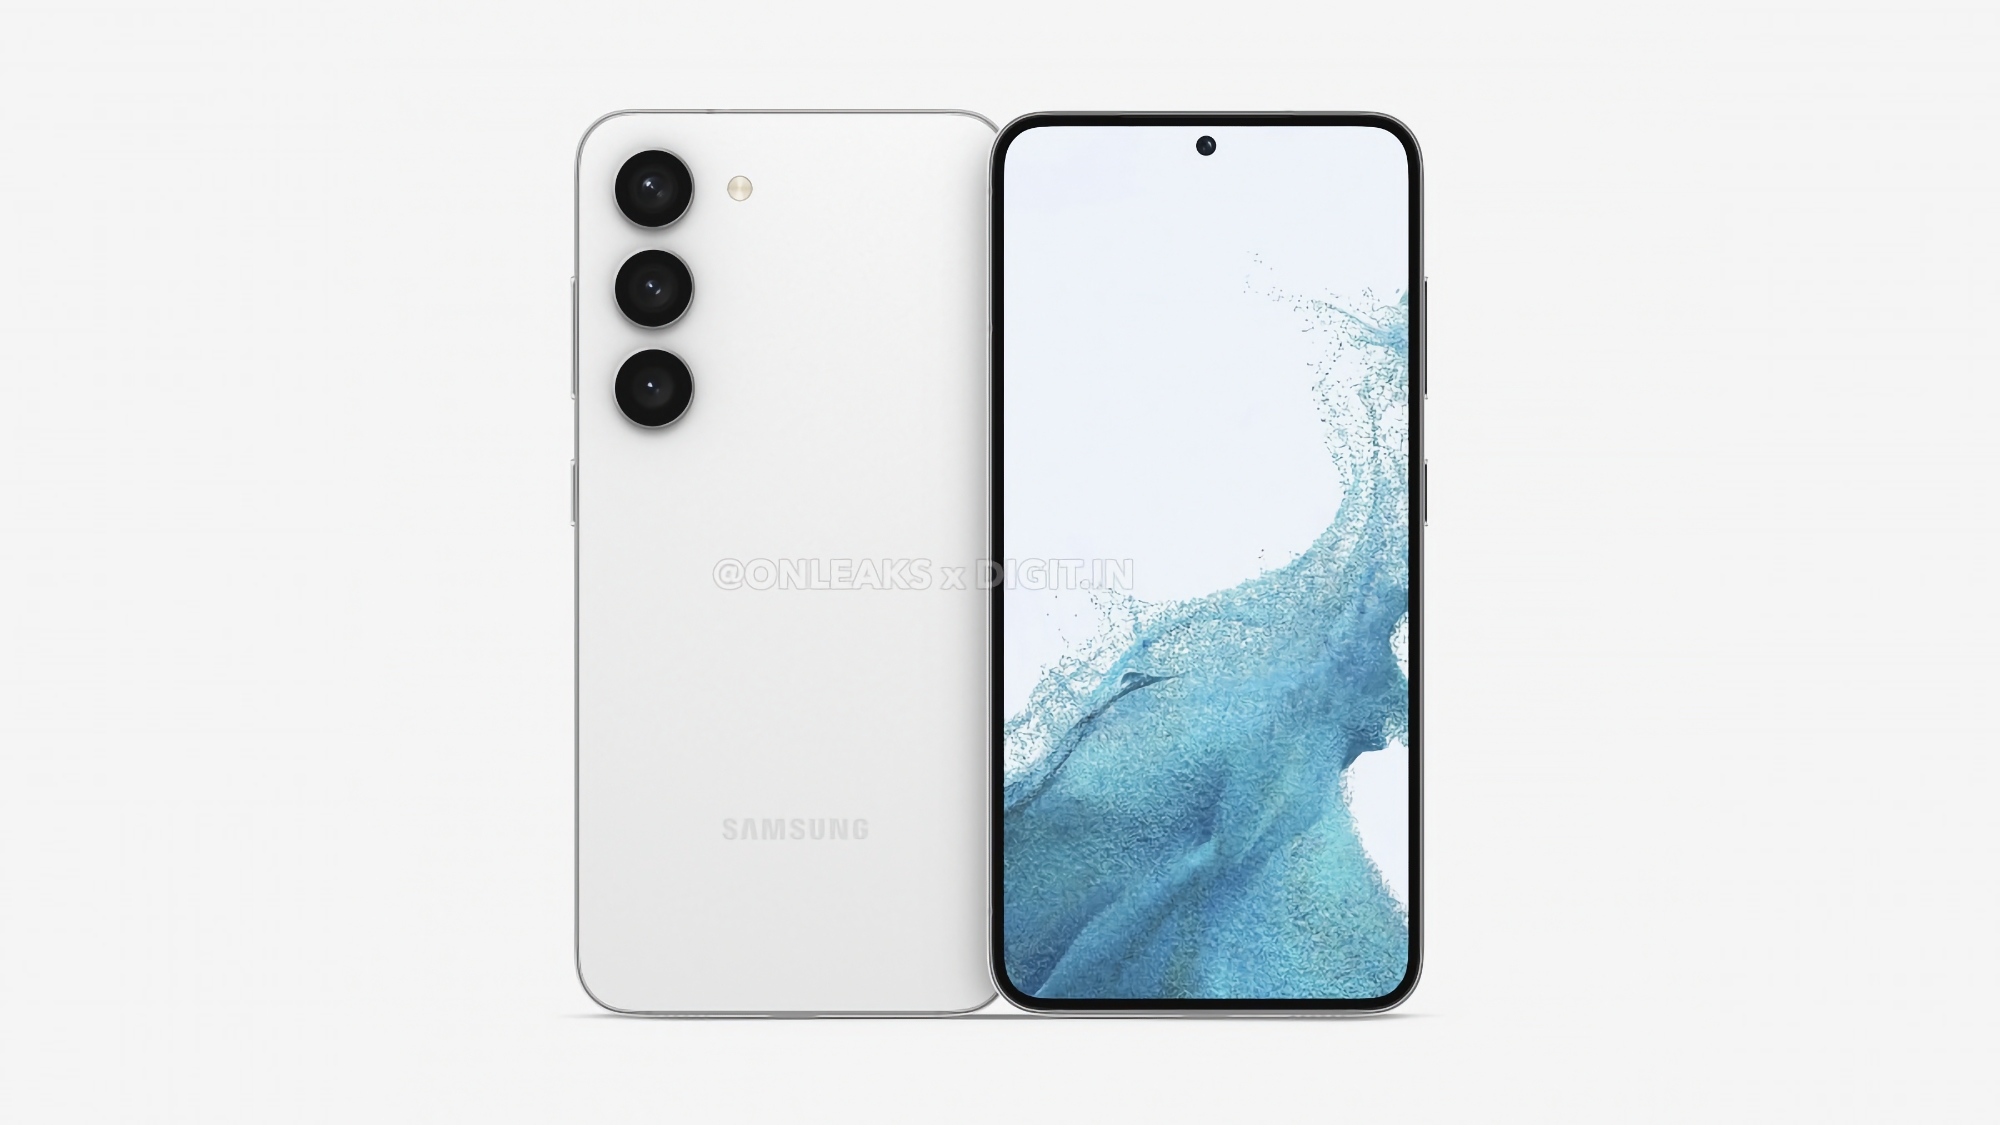 AMOLED-Bildschirm mit 120 Hz, übertaktete Version des Chips Snapdragon 8 Gen 2 und eine Triple-Kamera mit 50 MP: Insider enthüllte detaillierte Spezifikationen des Samsung Galaxy S23+